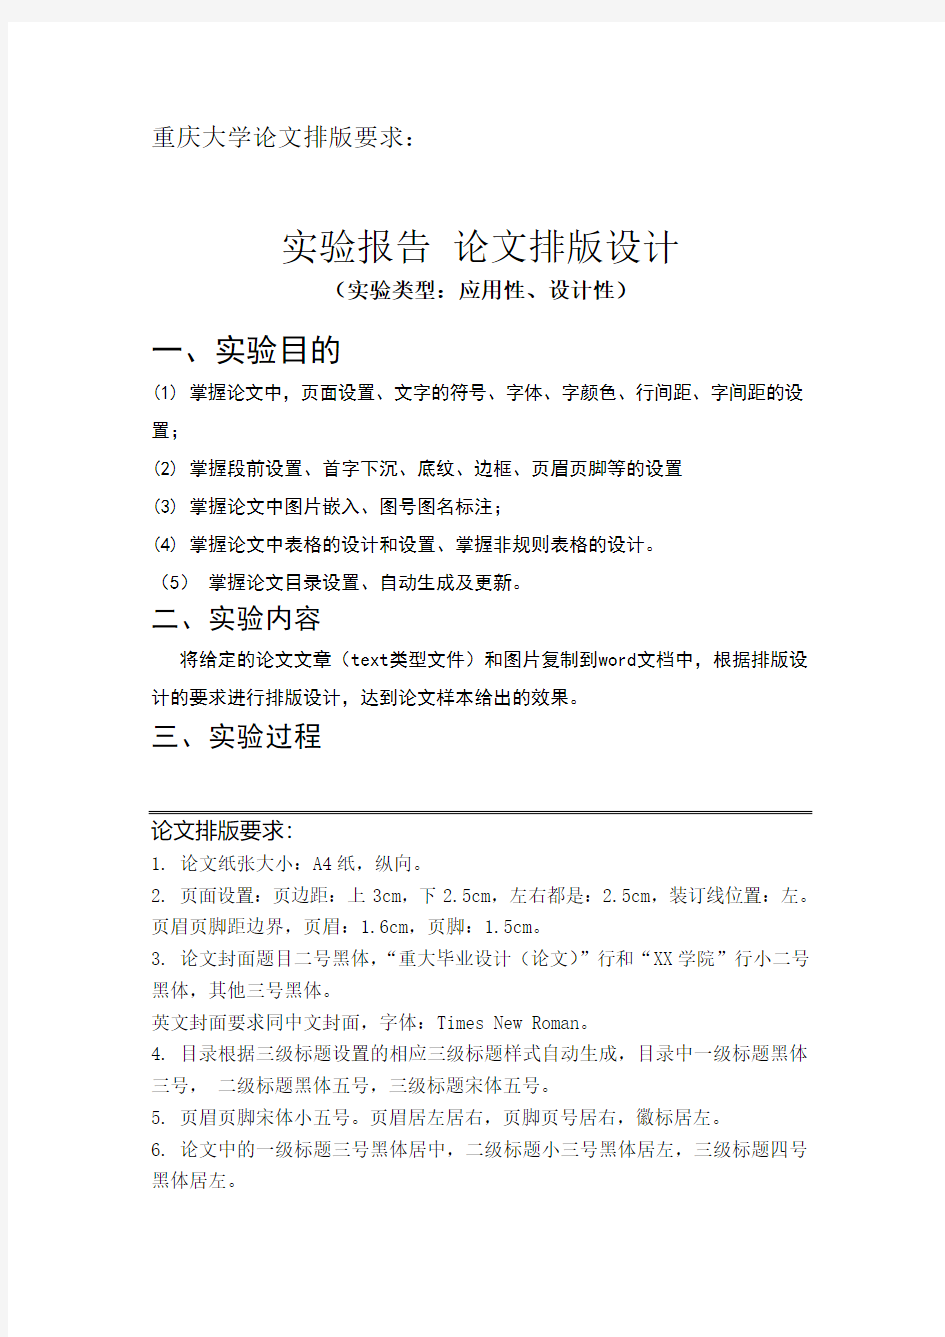 重庆大学最新论文排版要求